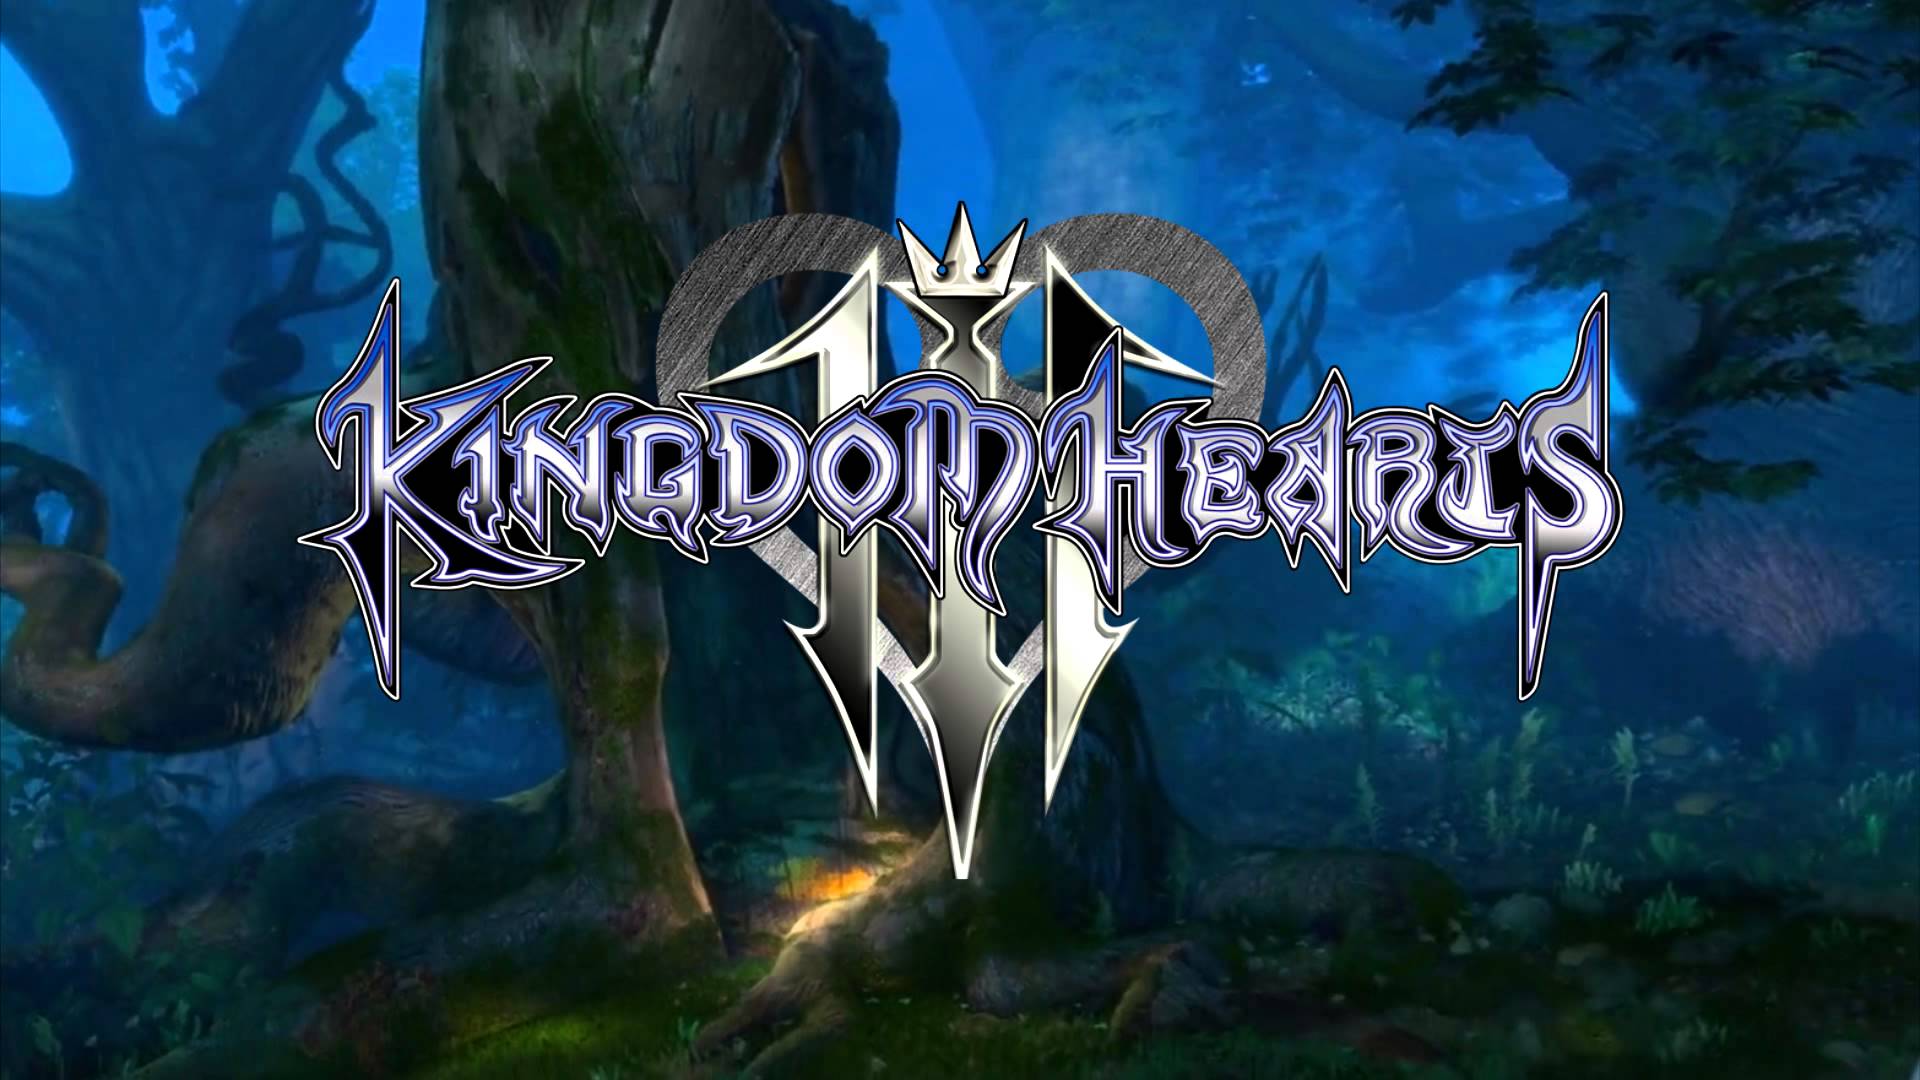 بازی Kingdom Hearts 3 – بازی نقش آفرینی – اسکوئر انیکس – بازی تک نفره